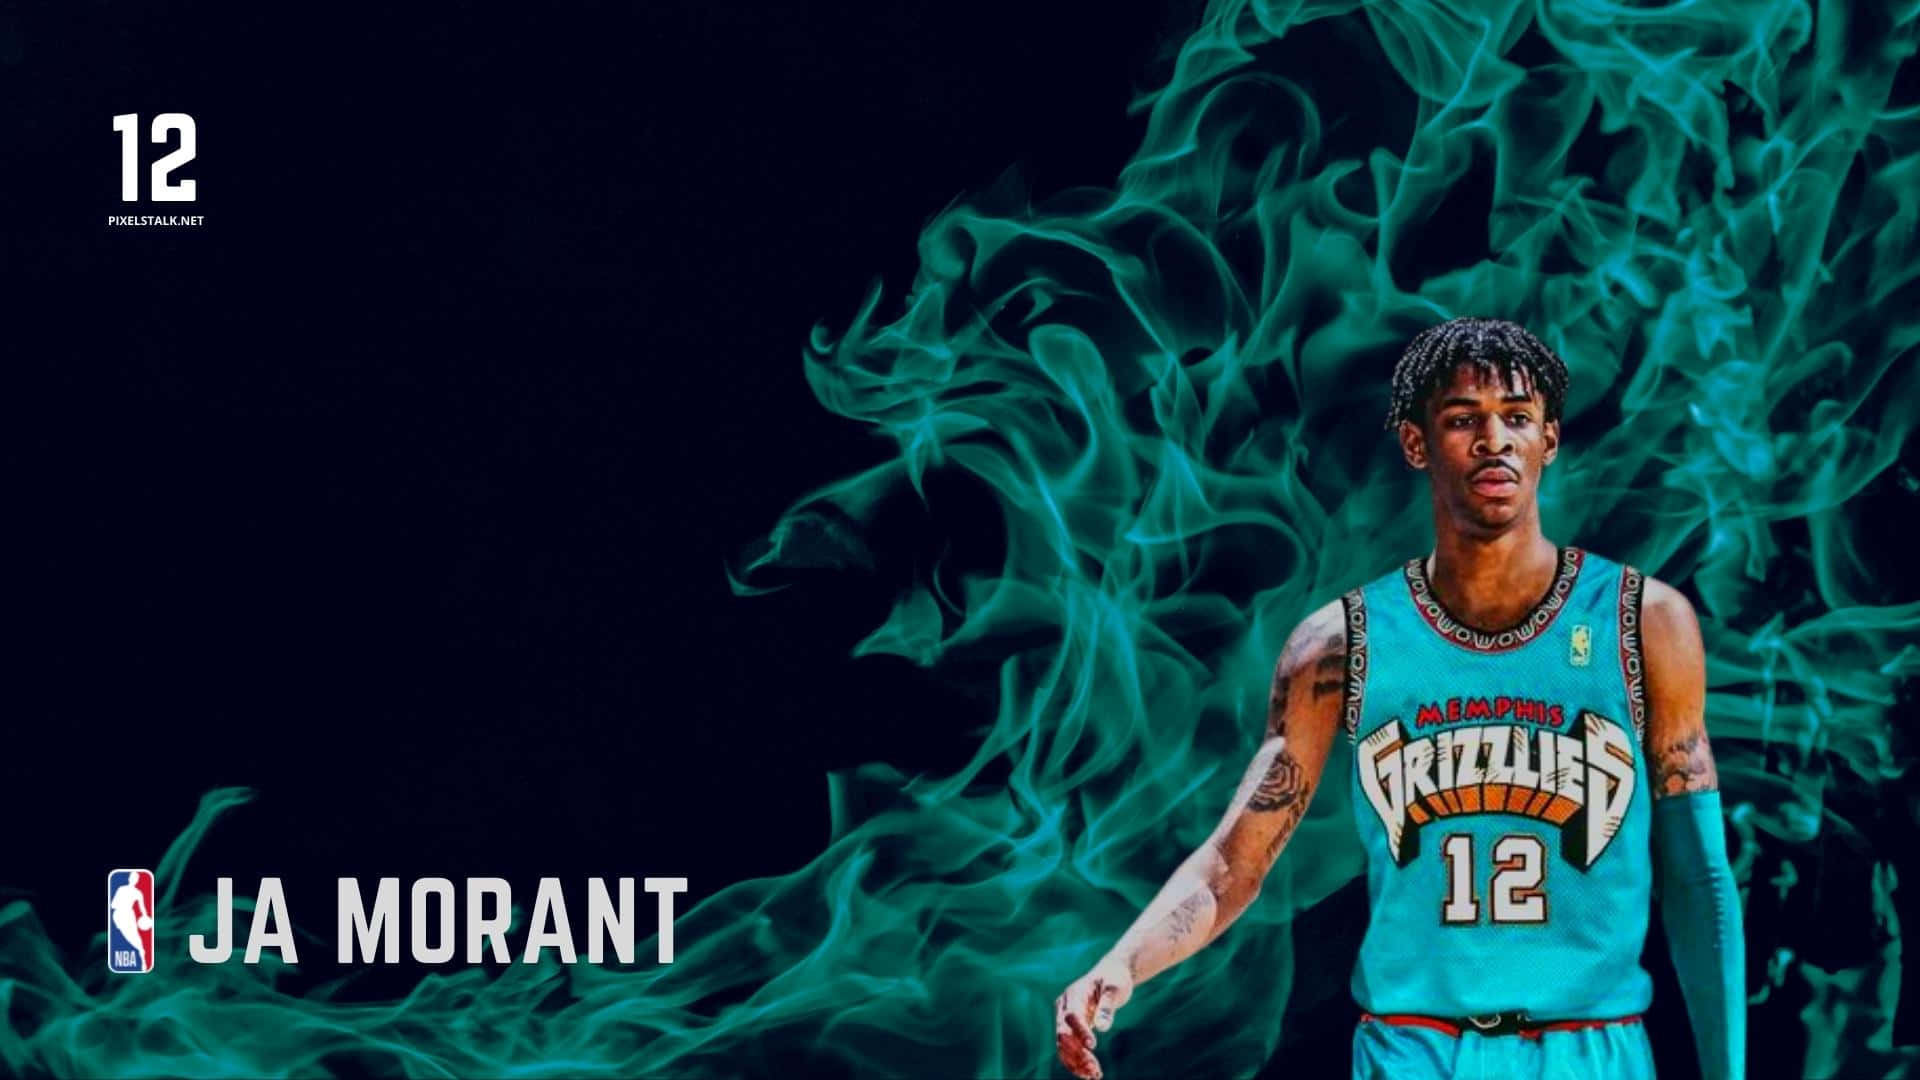 Ja Morant shines in the NBA spotlight